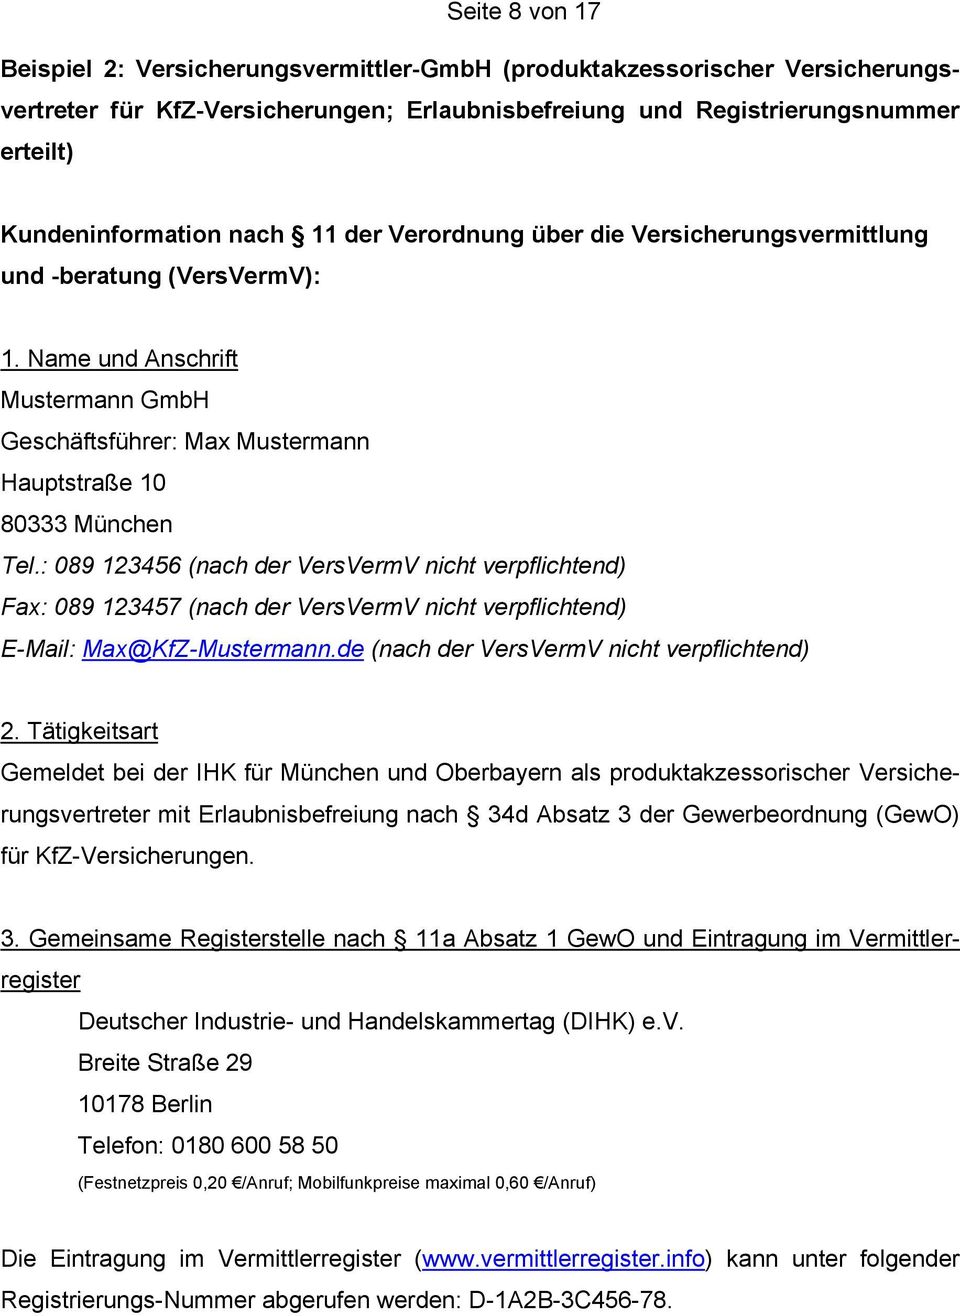 : 089 123456 (nach der VersVermV nicht verpflichtend) Fax: 089 123457 (nach der VersVermV nicht verpflichtend) E-Mail: Max@KfZ-Mustermann.de (nach der VersVermV nicht verpflichtend) 2.